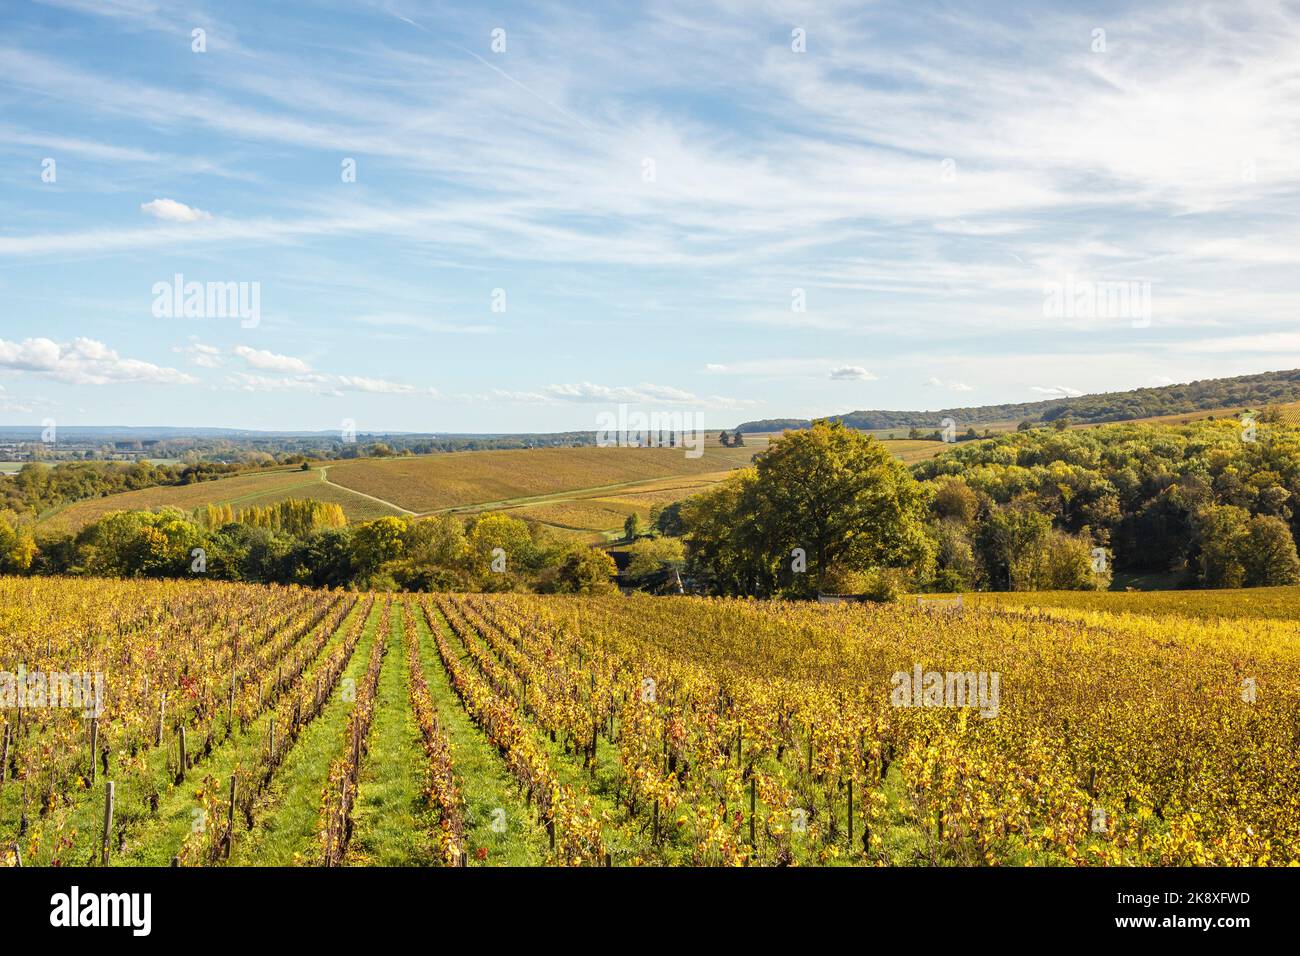 France, Cher, Sancerre, village labelled Les Plus Beaux Villages de France, The Most Beautiful Villages of France, Sancerre vineyards in autumn Stock Photo